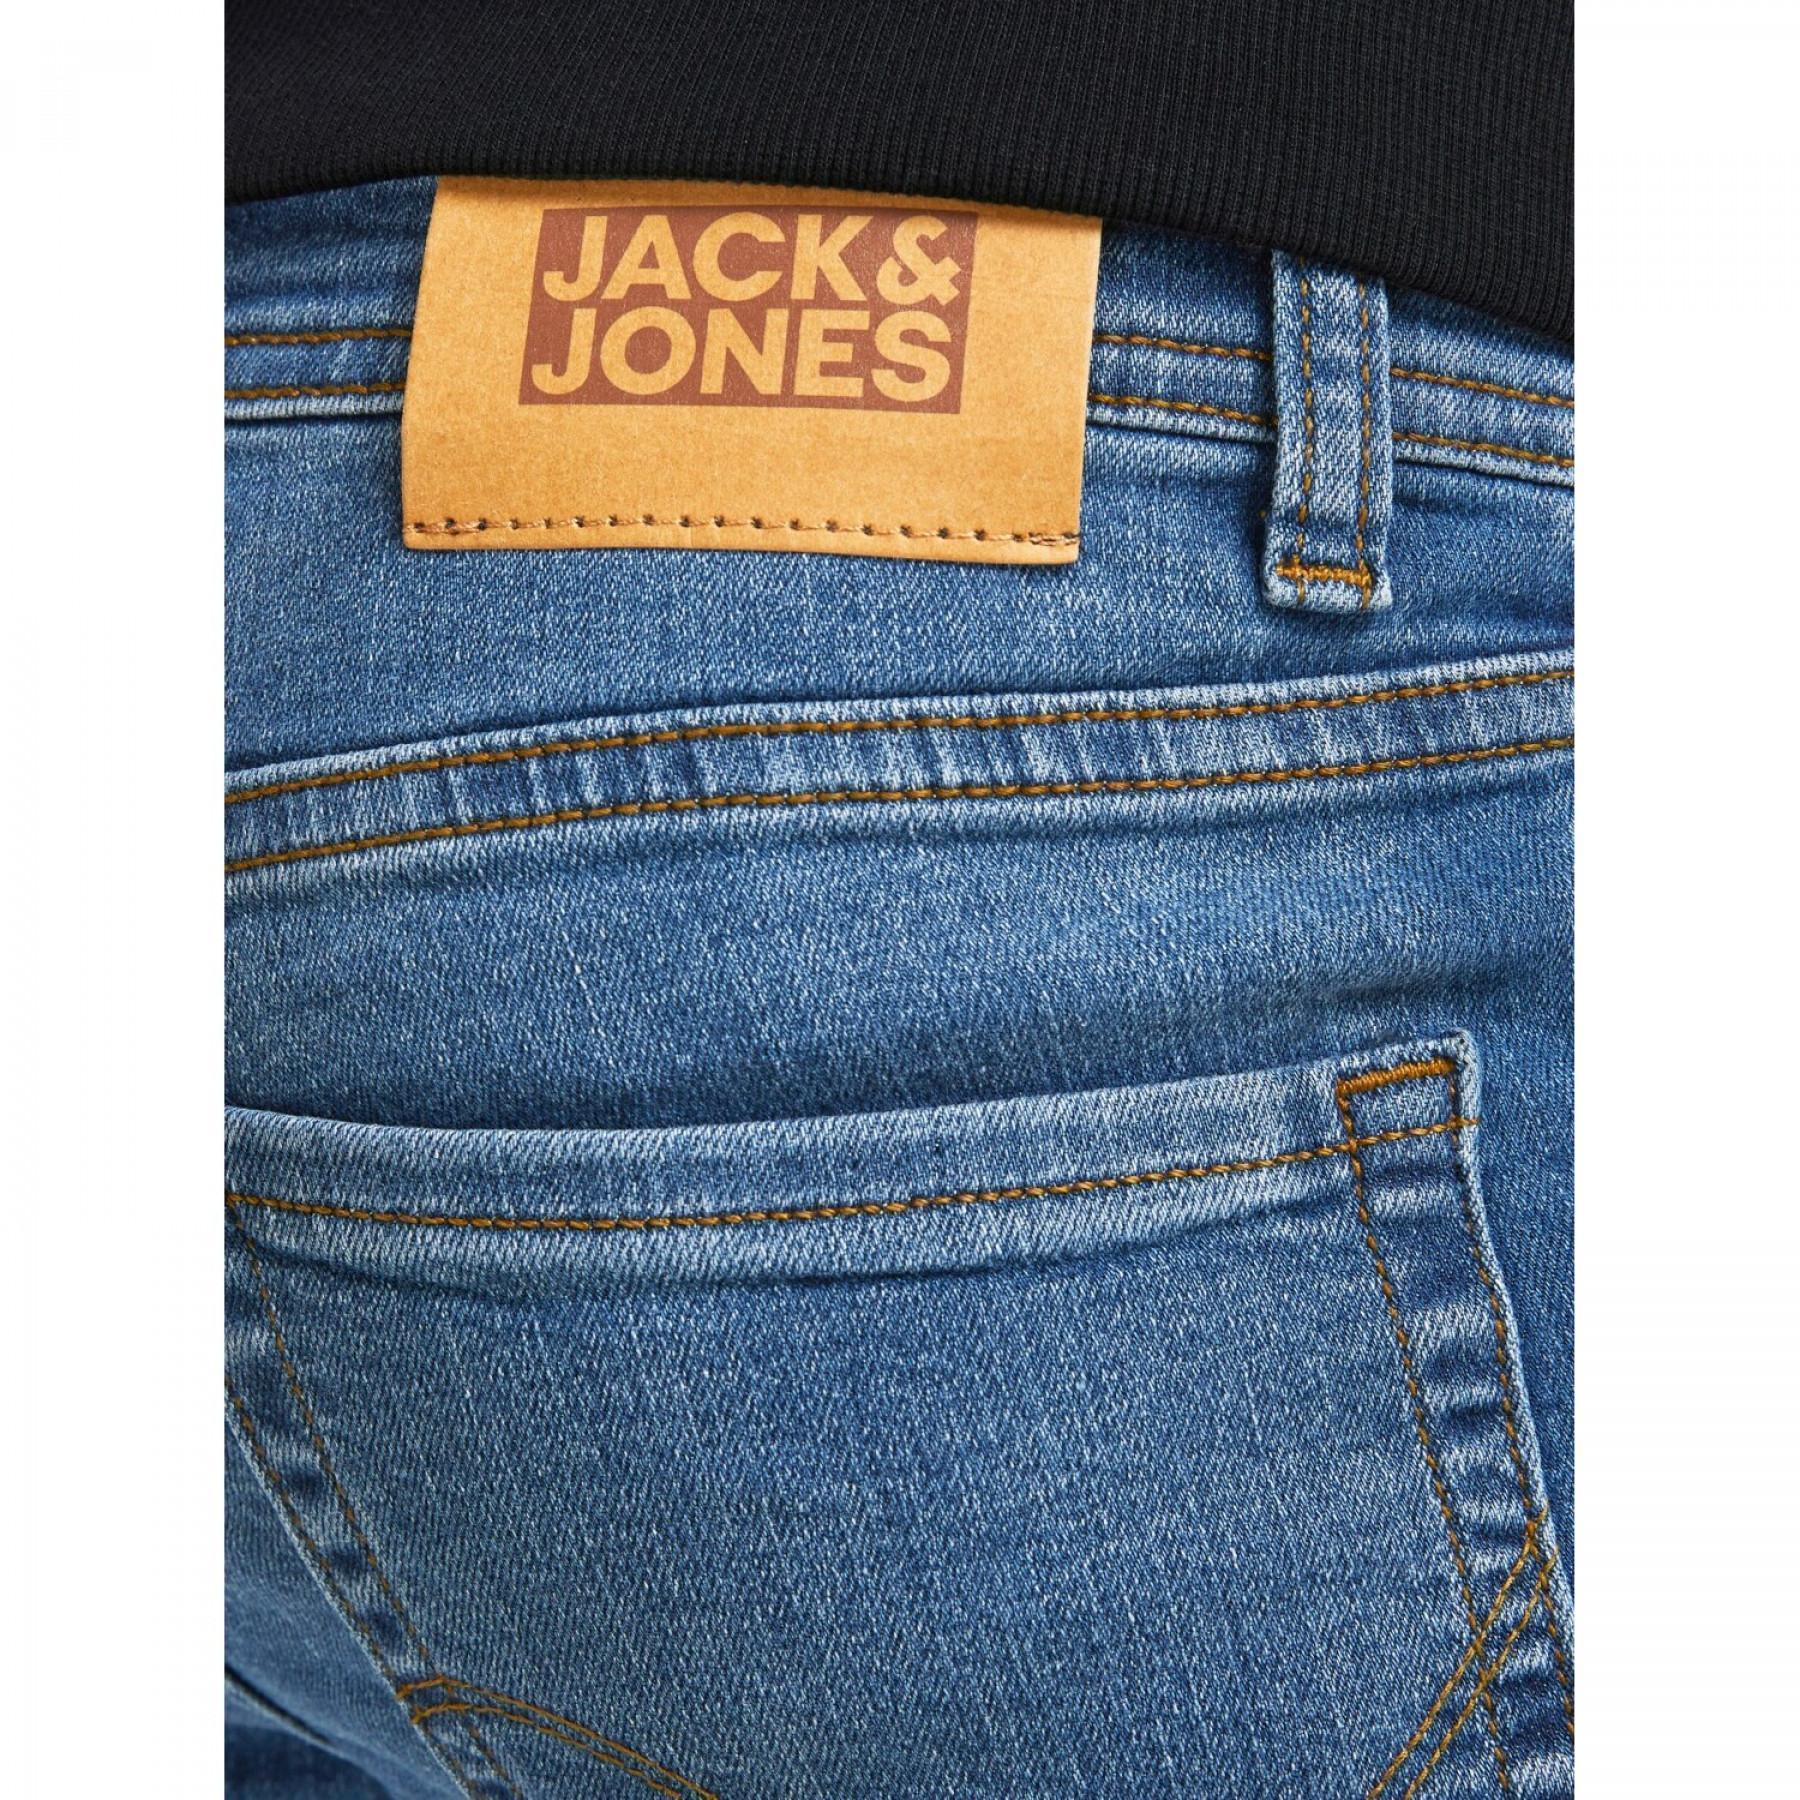 Pantalones vaqueros para niños Jack & Jones original 154